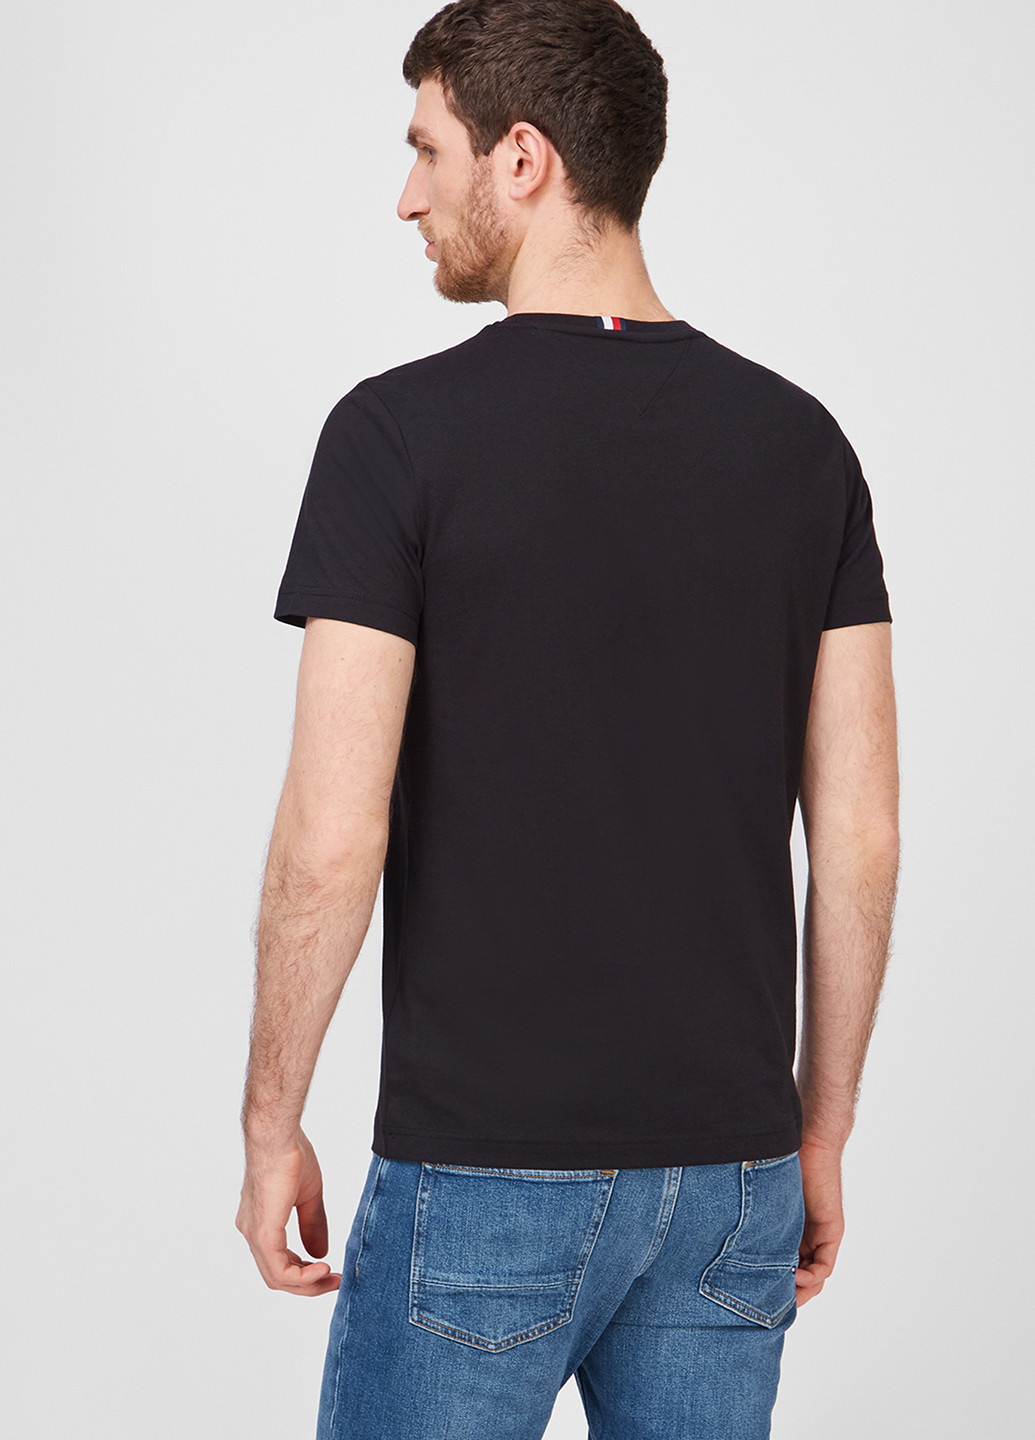 Черная футболка Tommy Hilfiger